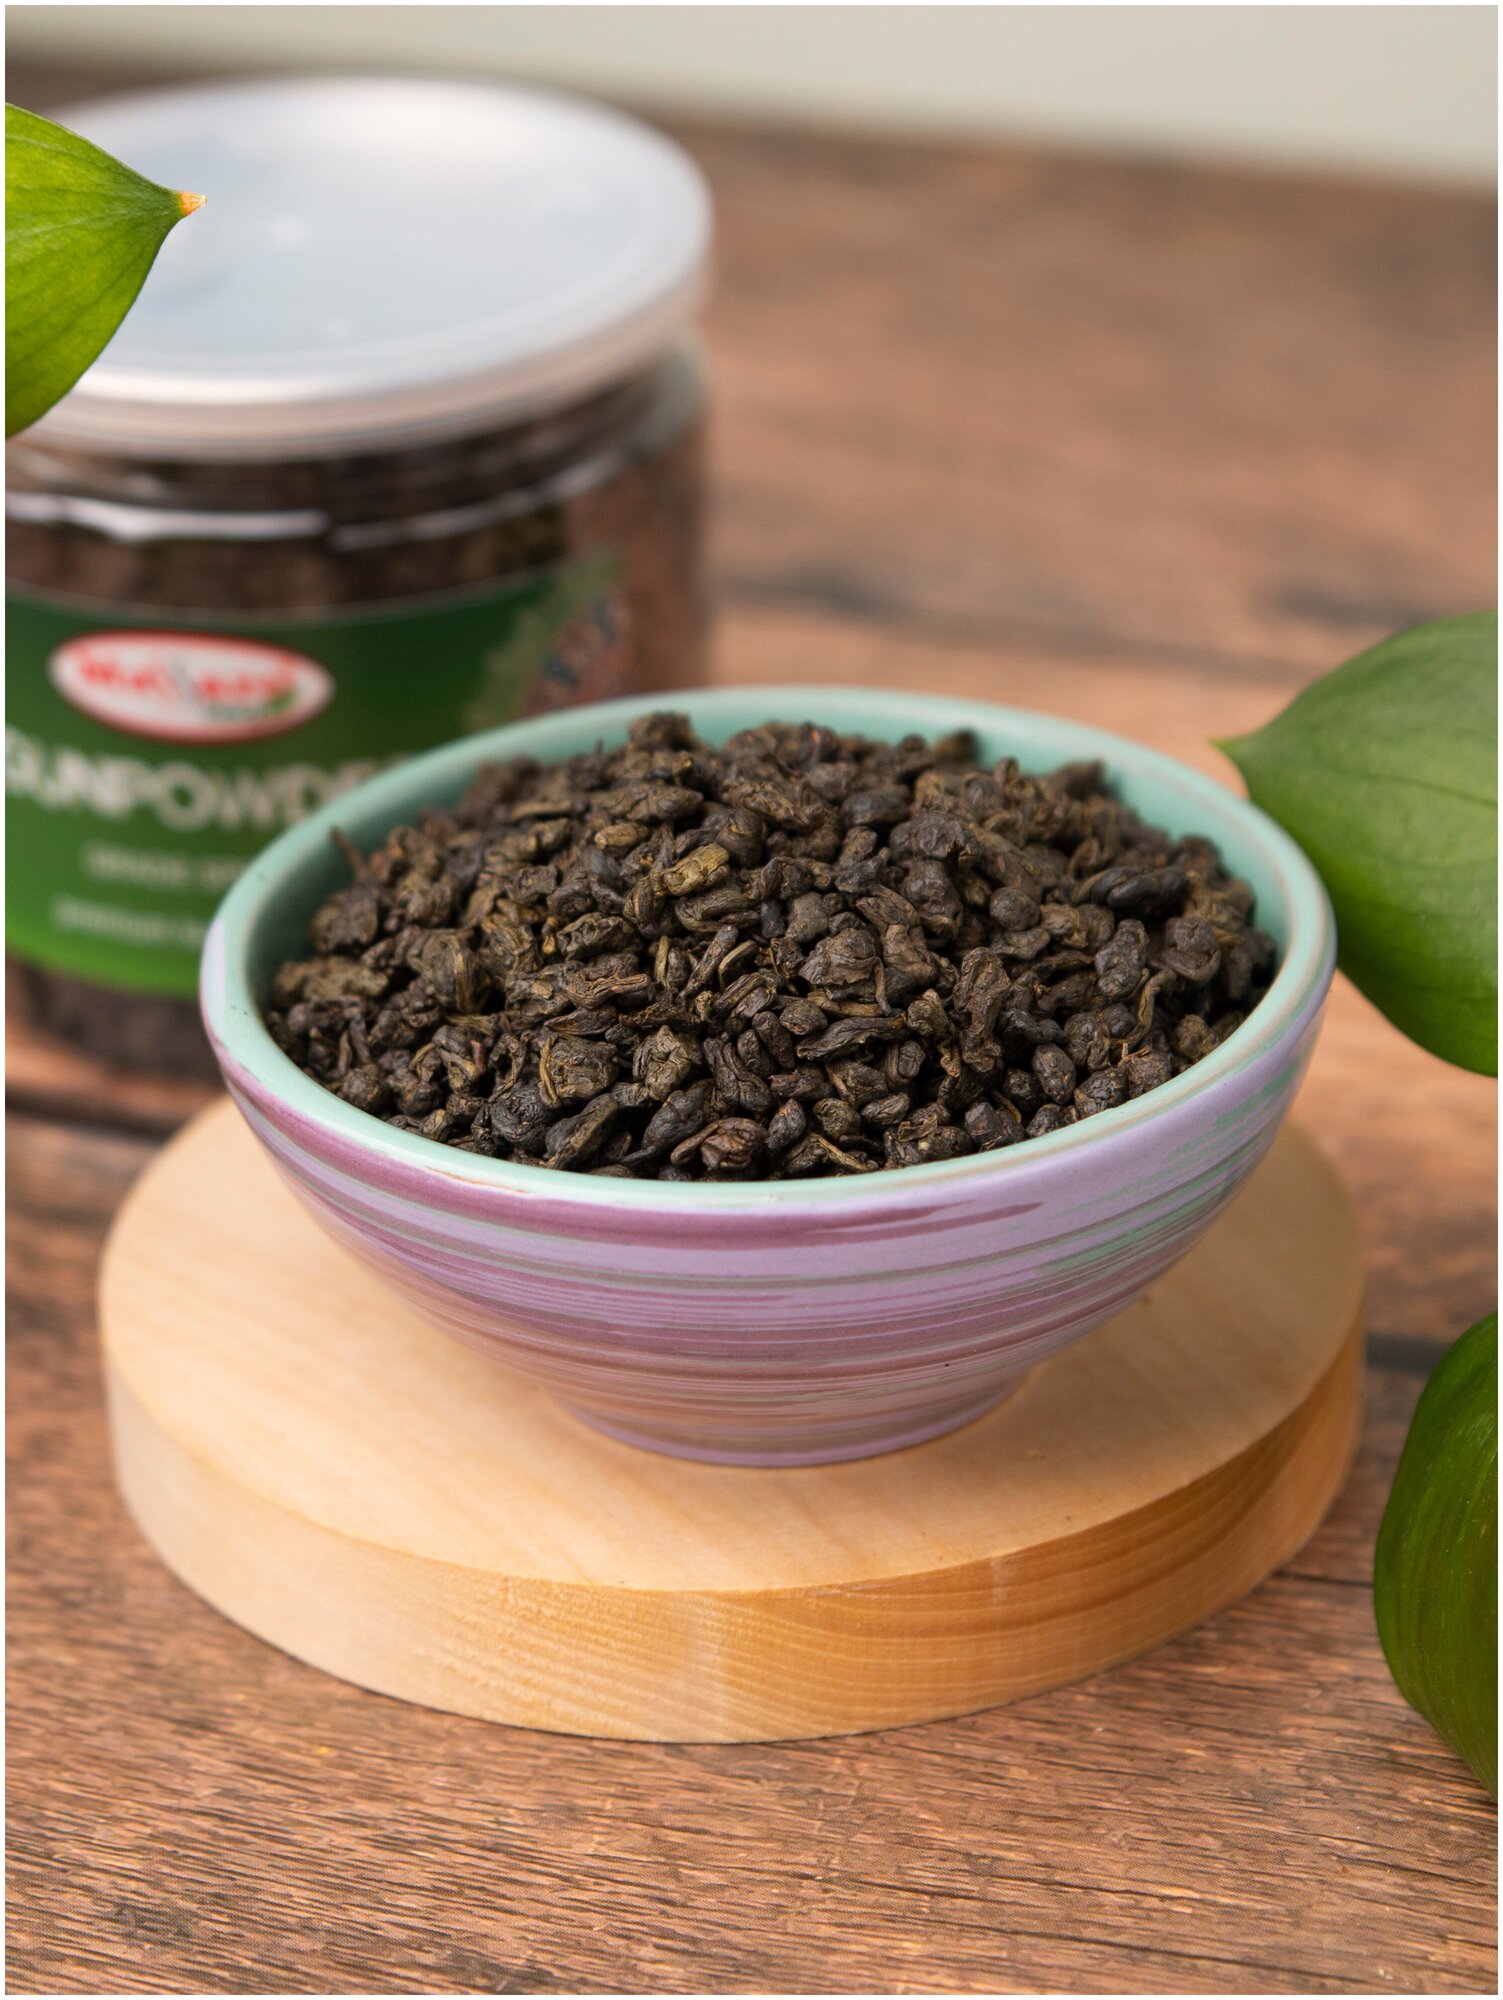 Чай зеленый китайский Ганпаудер 3505 Massaro tea 100гр в банке ПЭТ easy open - фотография № 2